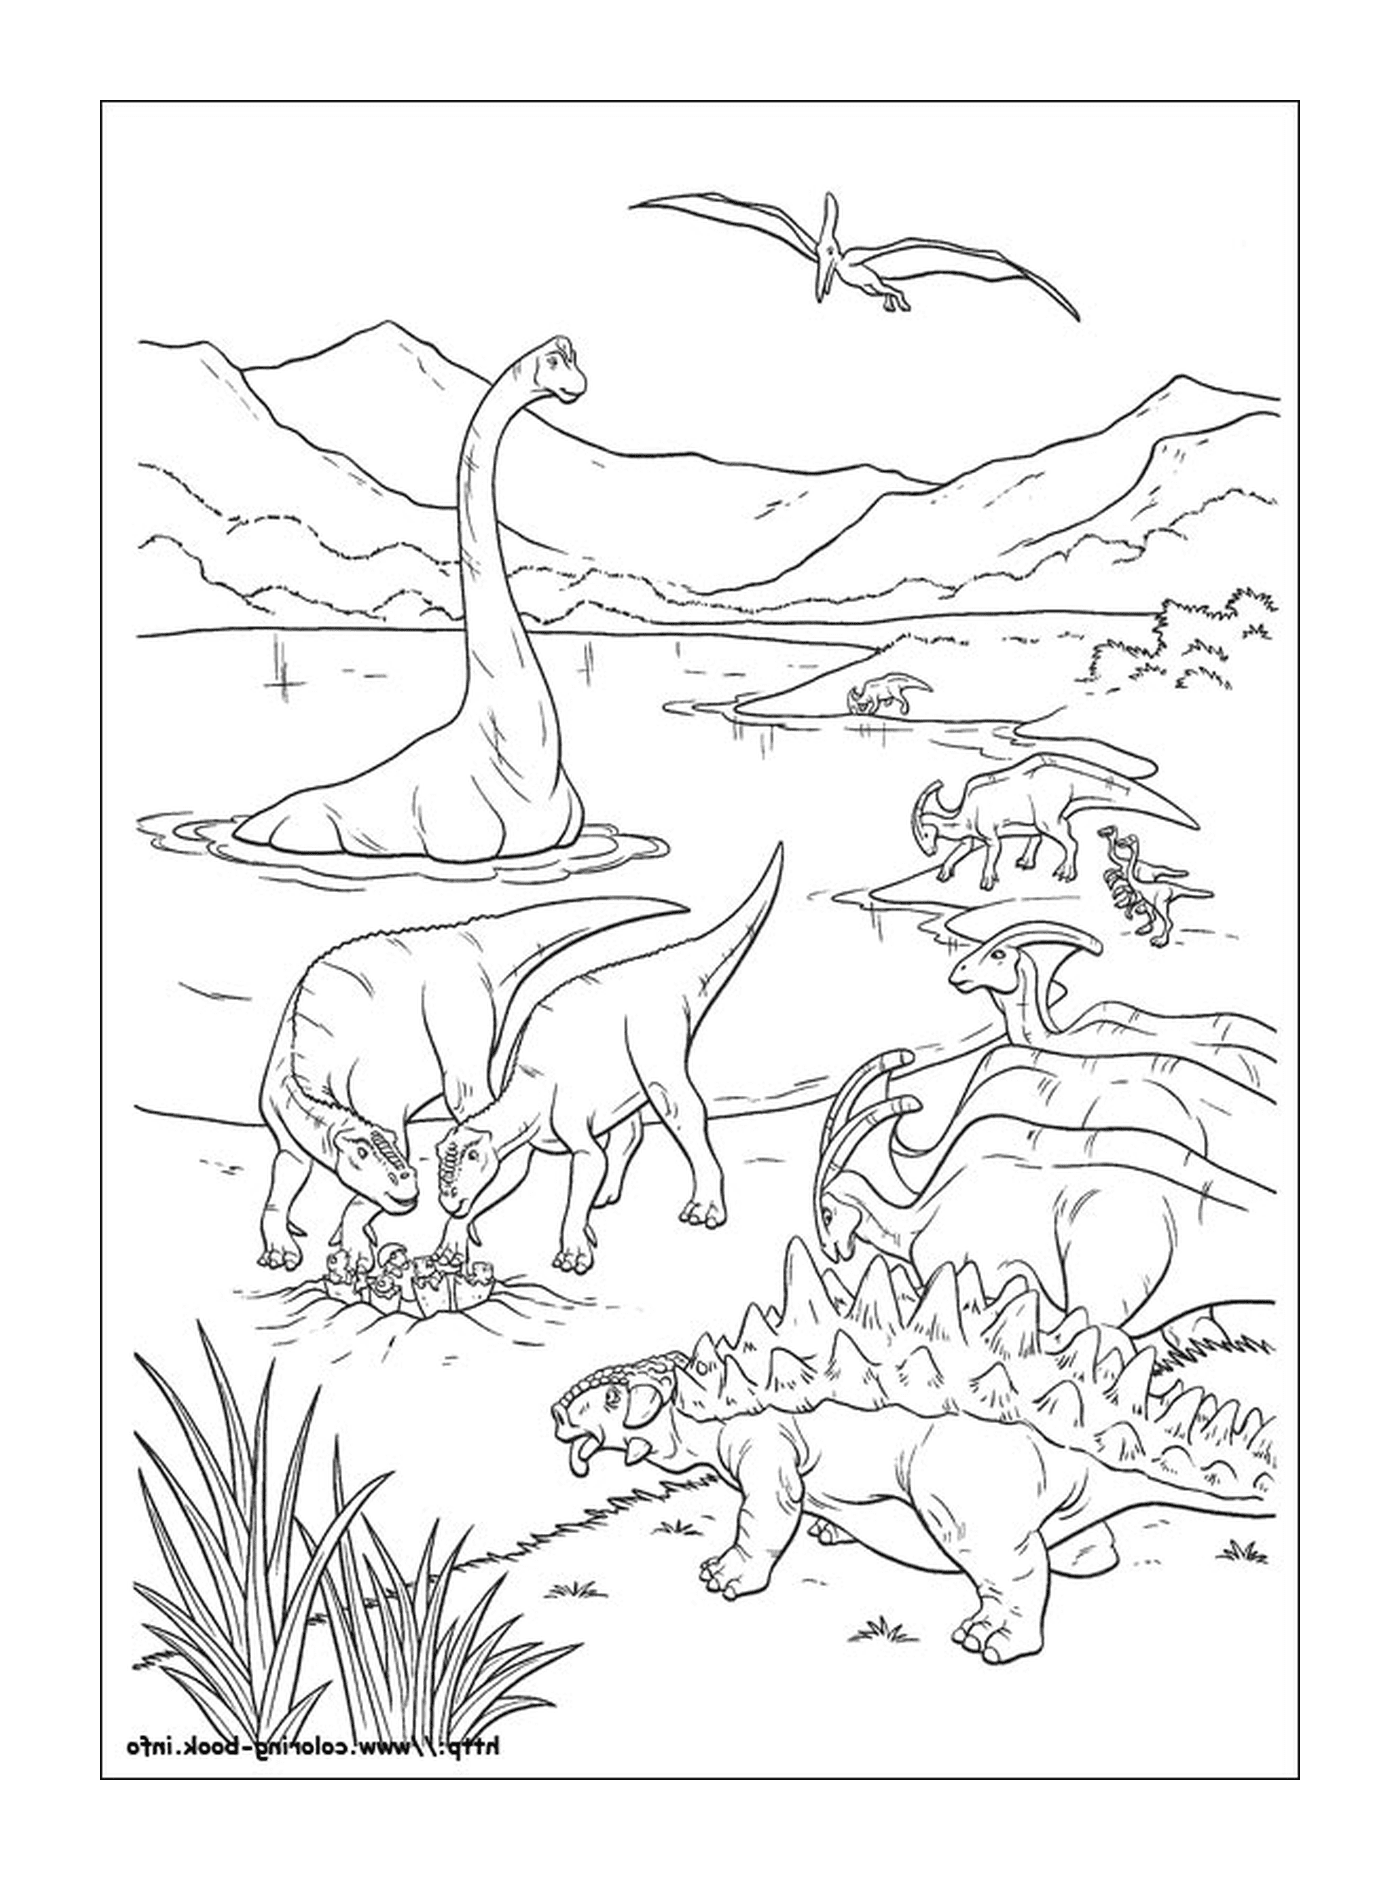  Eine Gruppe Dinosaurier im Wasser 